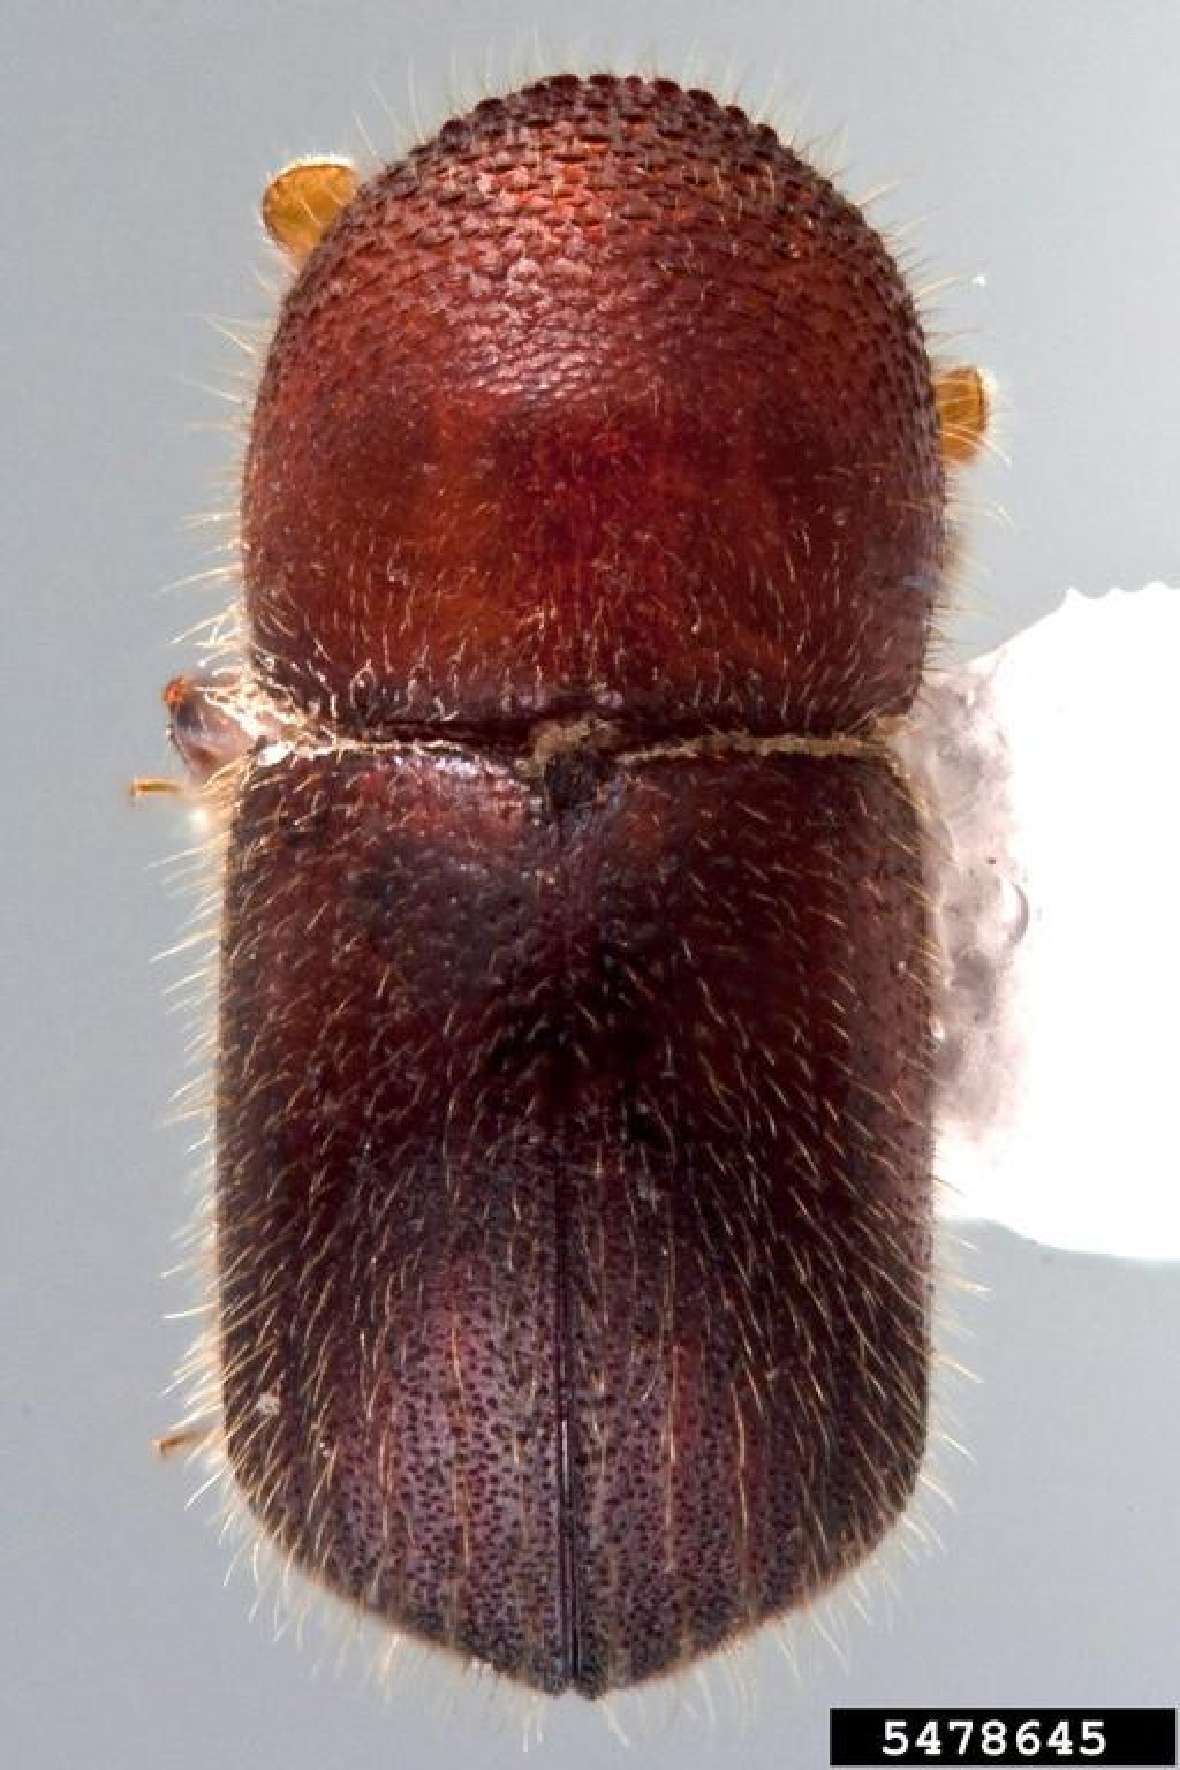 Dorsalansicht eines Käfers von Xylosandrus crassiusculus